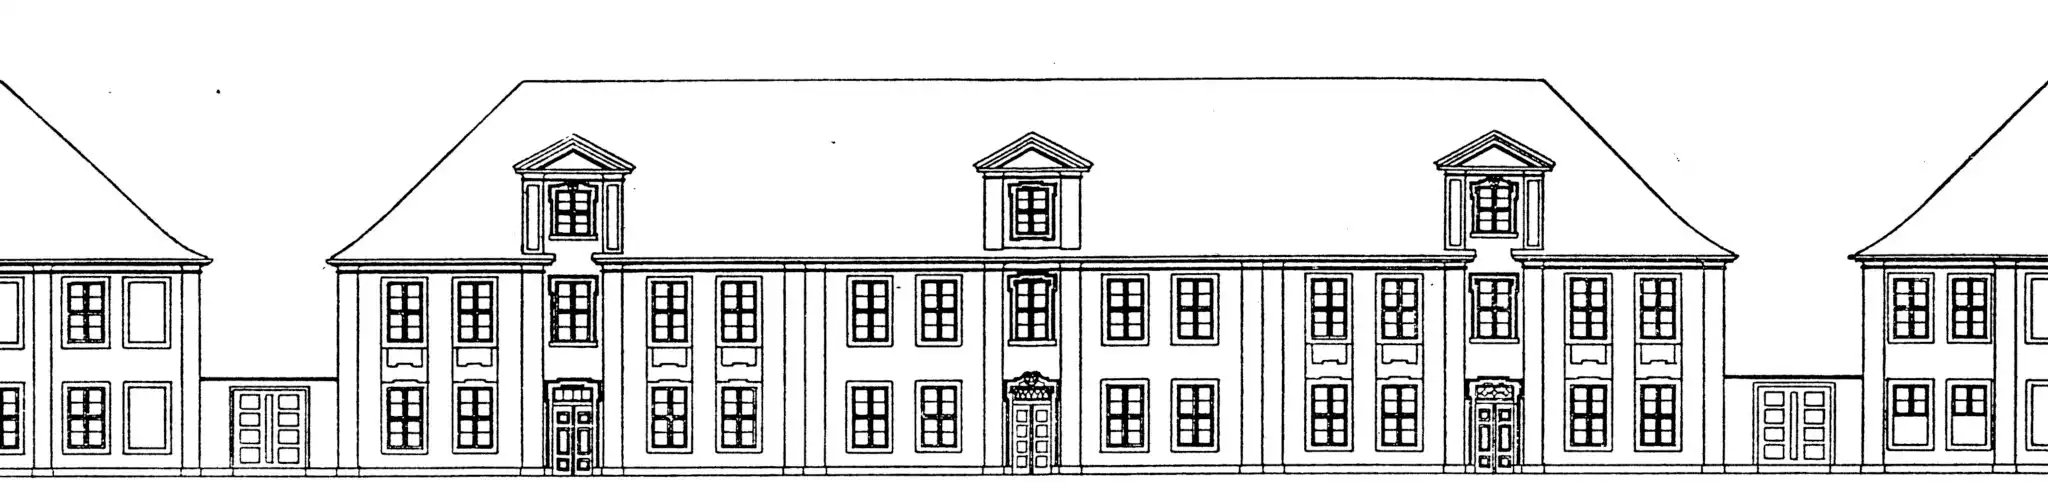 Typenhäuser der Zweiten Stadterweiterung in Potsdam 1733-1742, 1912